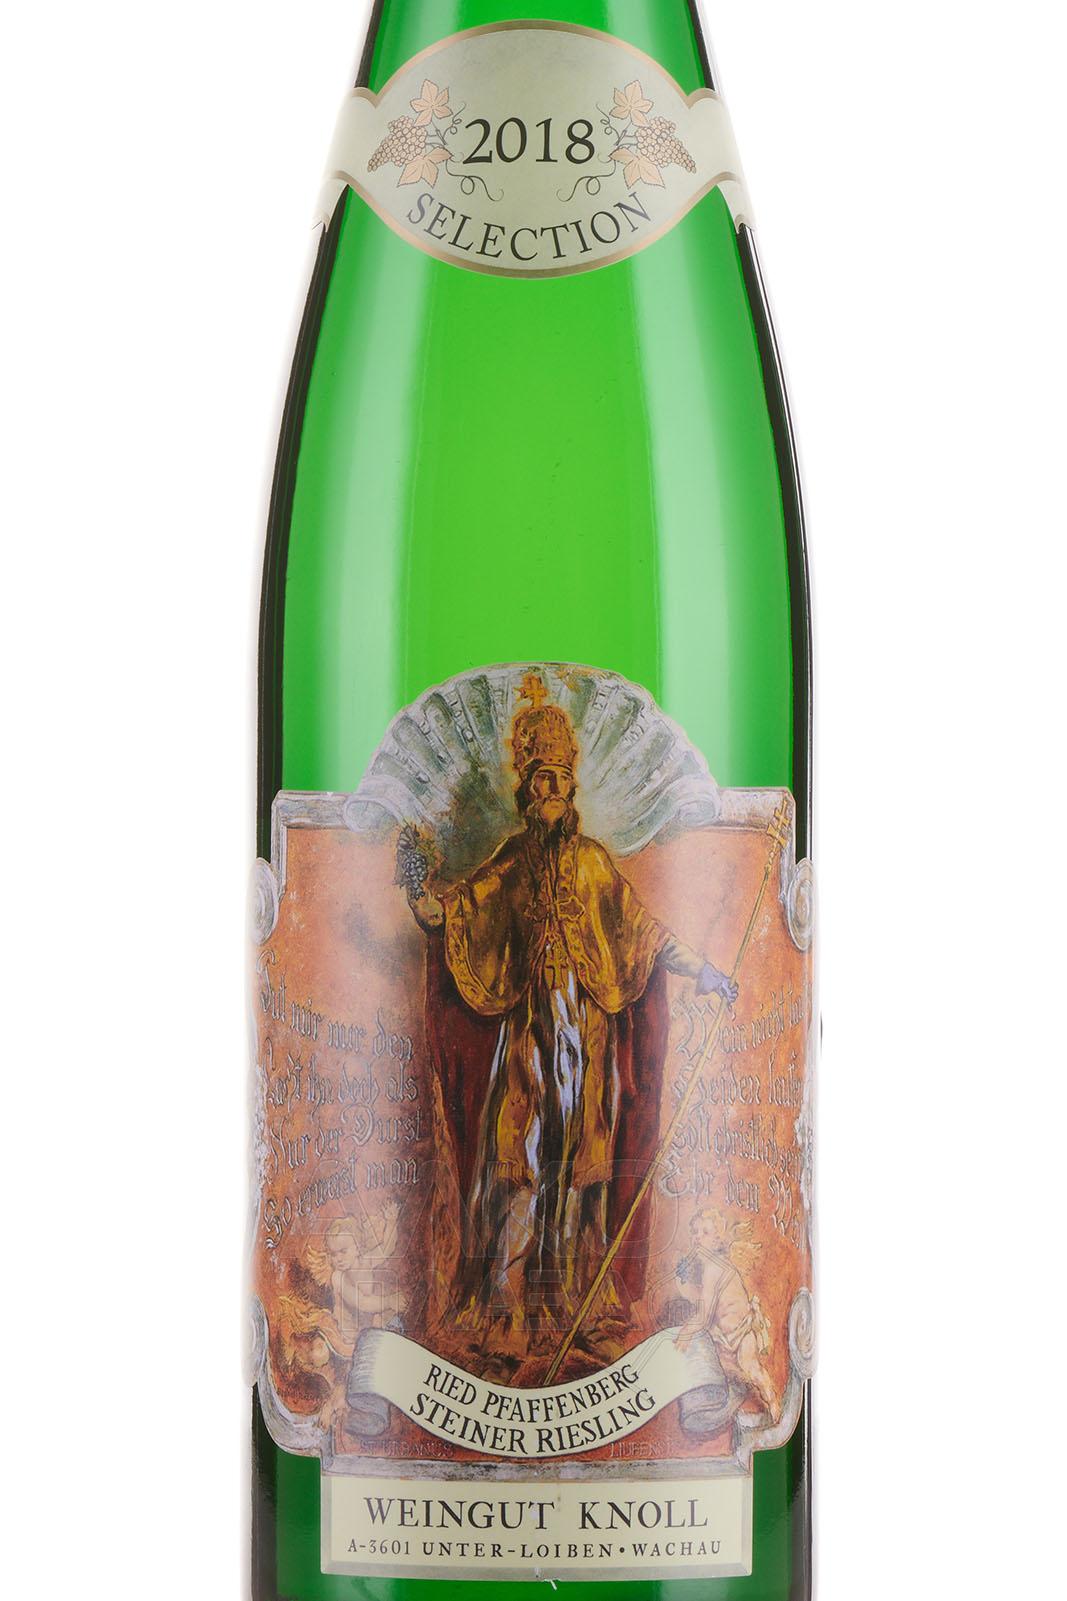 Вина рид. Рид Пфаффенберг Штайнер Рислинг зелекцион. Вино Schmelz Gruner Veltliner Federspiel 2016 0.75 л. Белое вино Лойбнер Грюнер. Gruner Veltliner Loibner вино белое сухое Австрия.